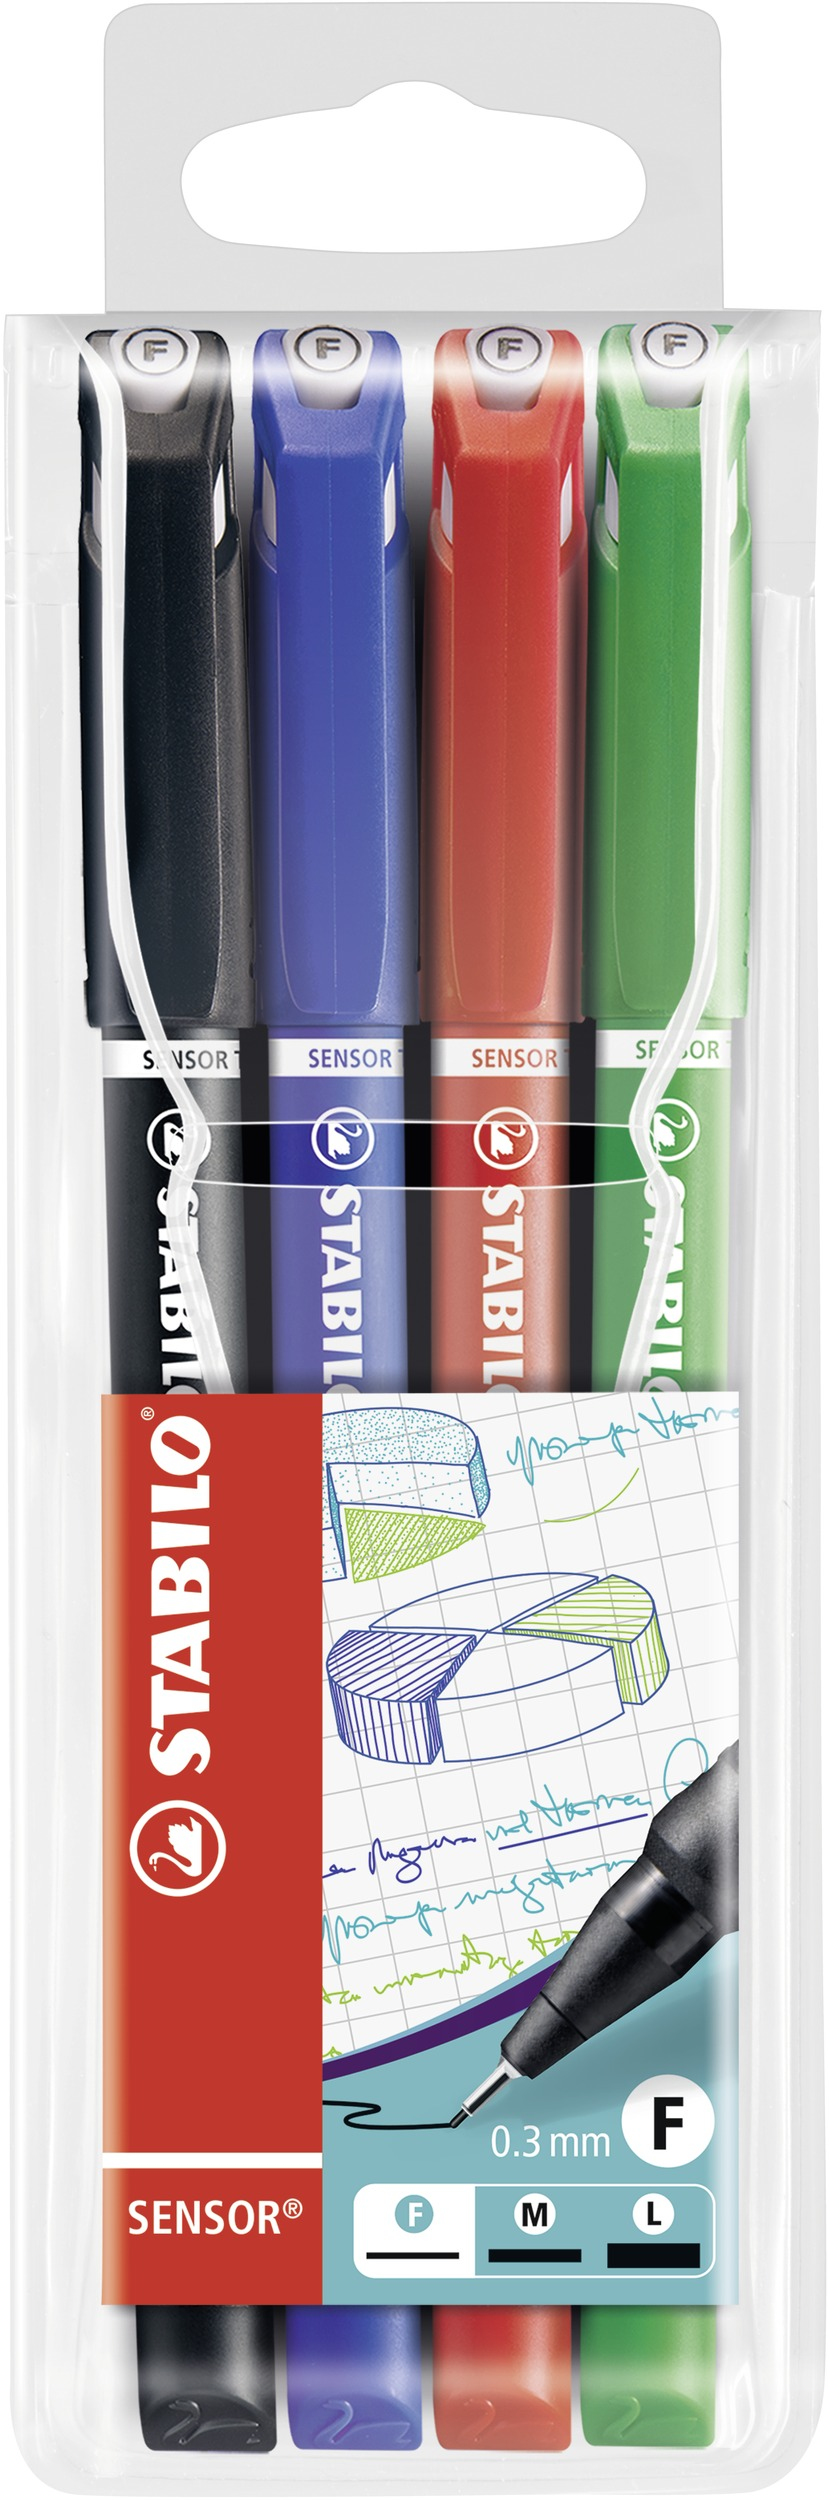 stabilo Stabilo Sensor Fineliner Pen 0.3mm Line Black/blue/red/green (wallet 4) 189/4 189/4 - AD01